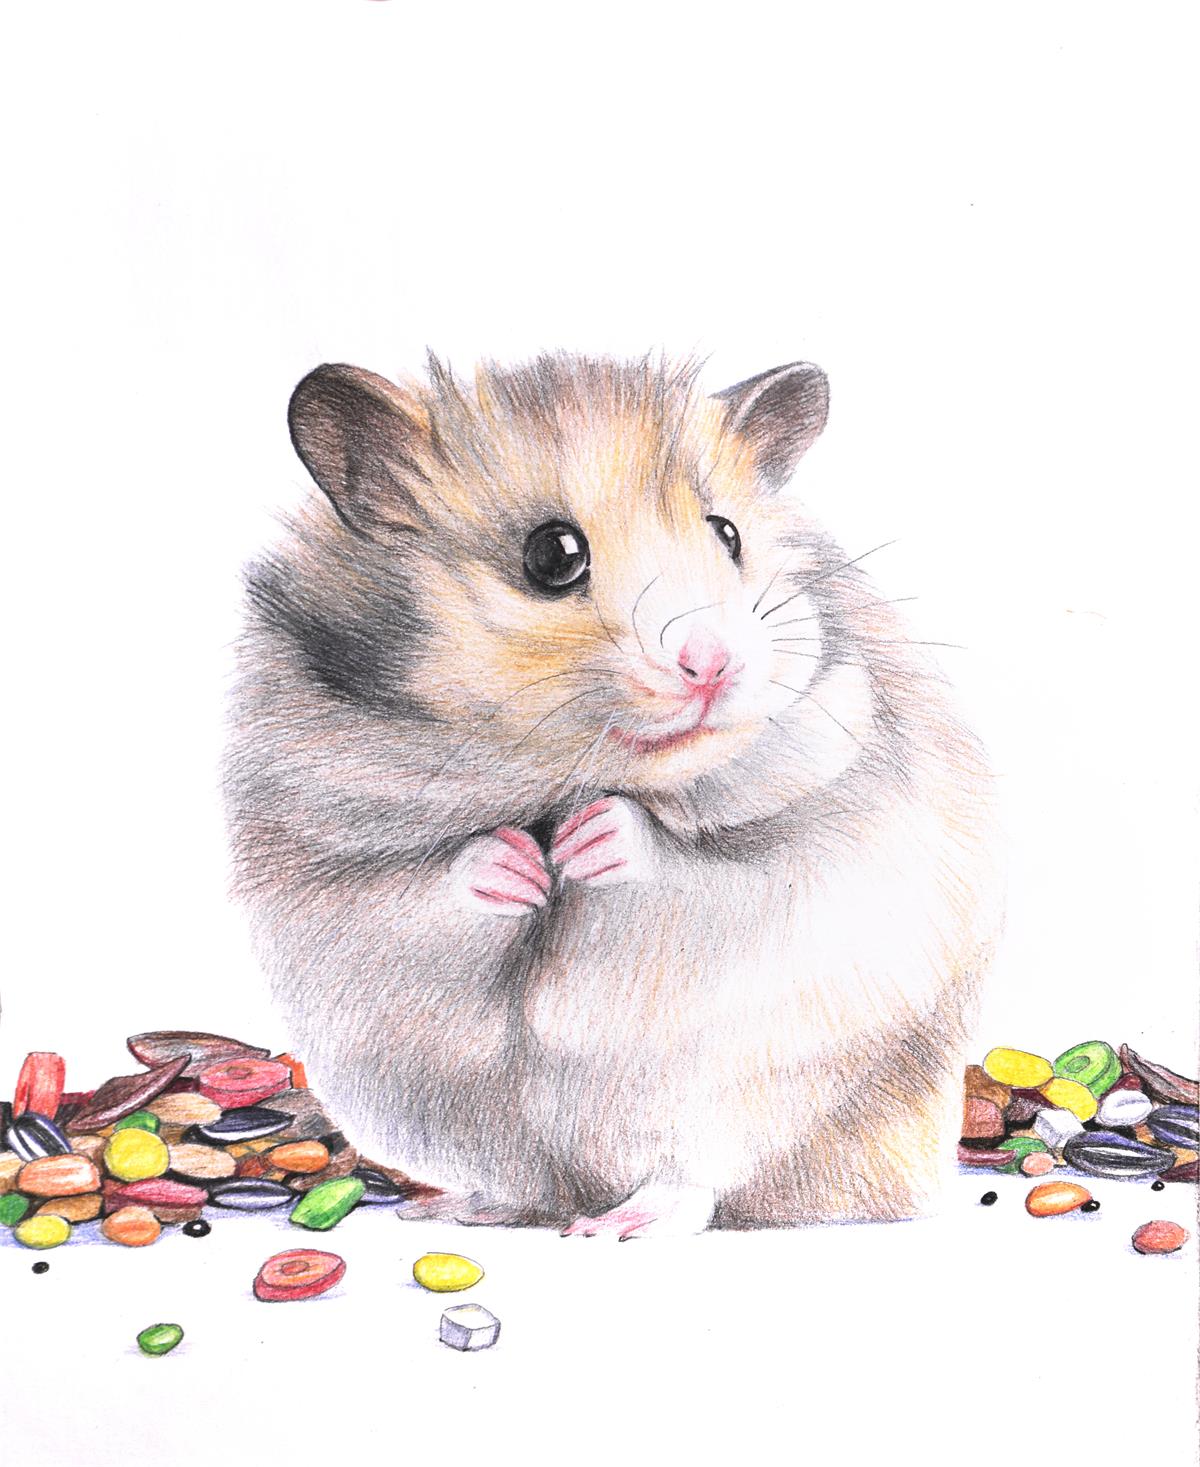 彩色铅笔画步骤教程:小仓鼠的画法